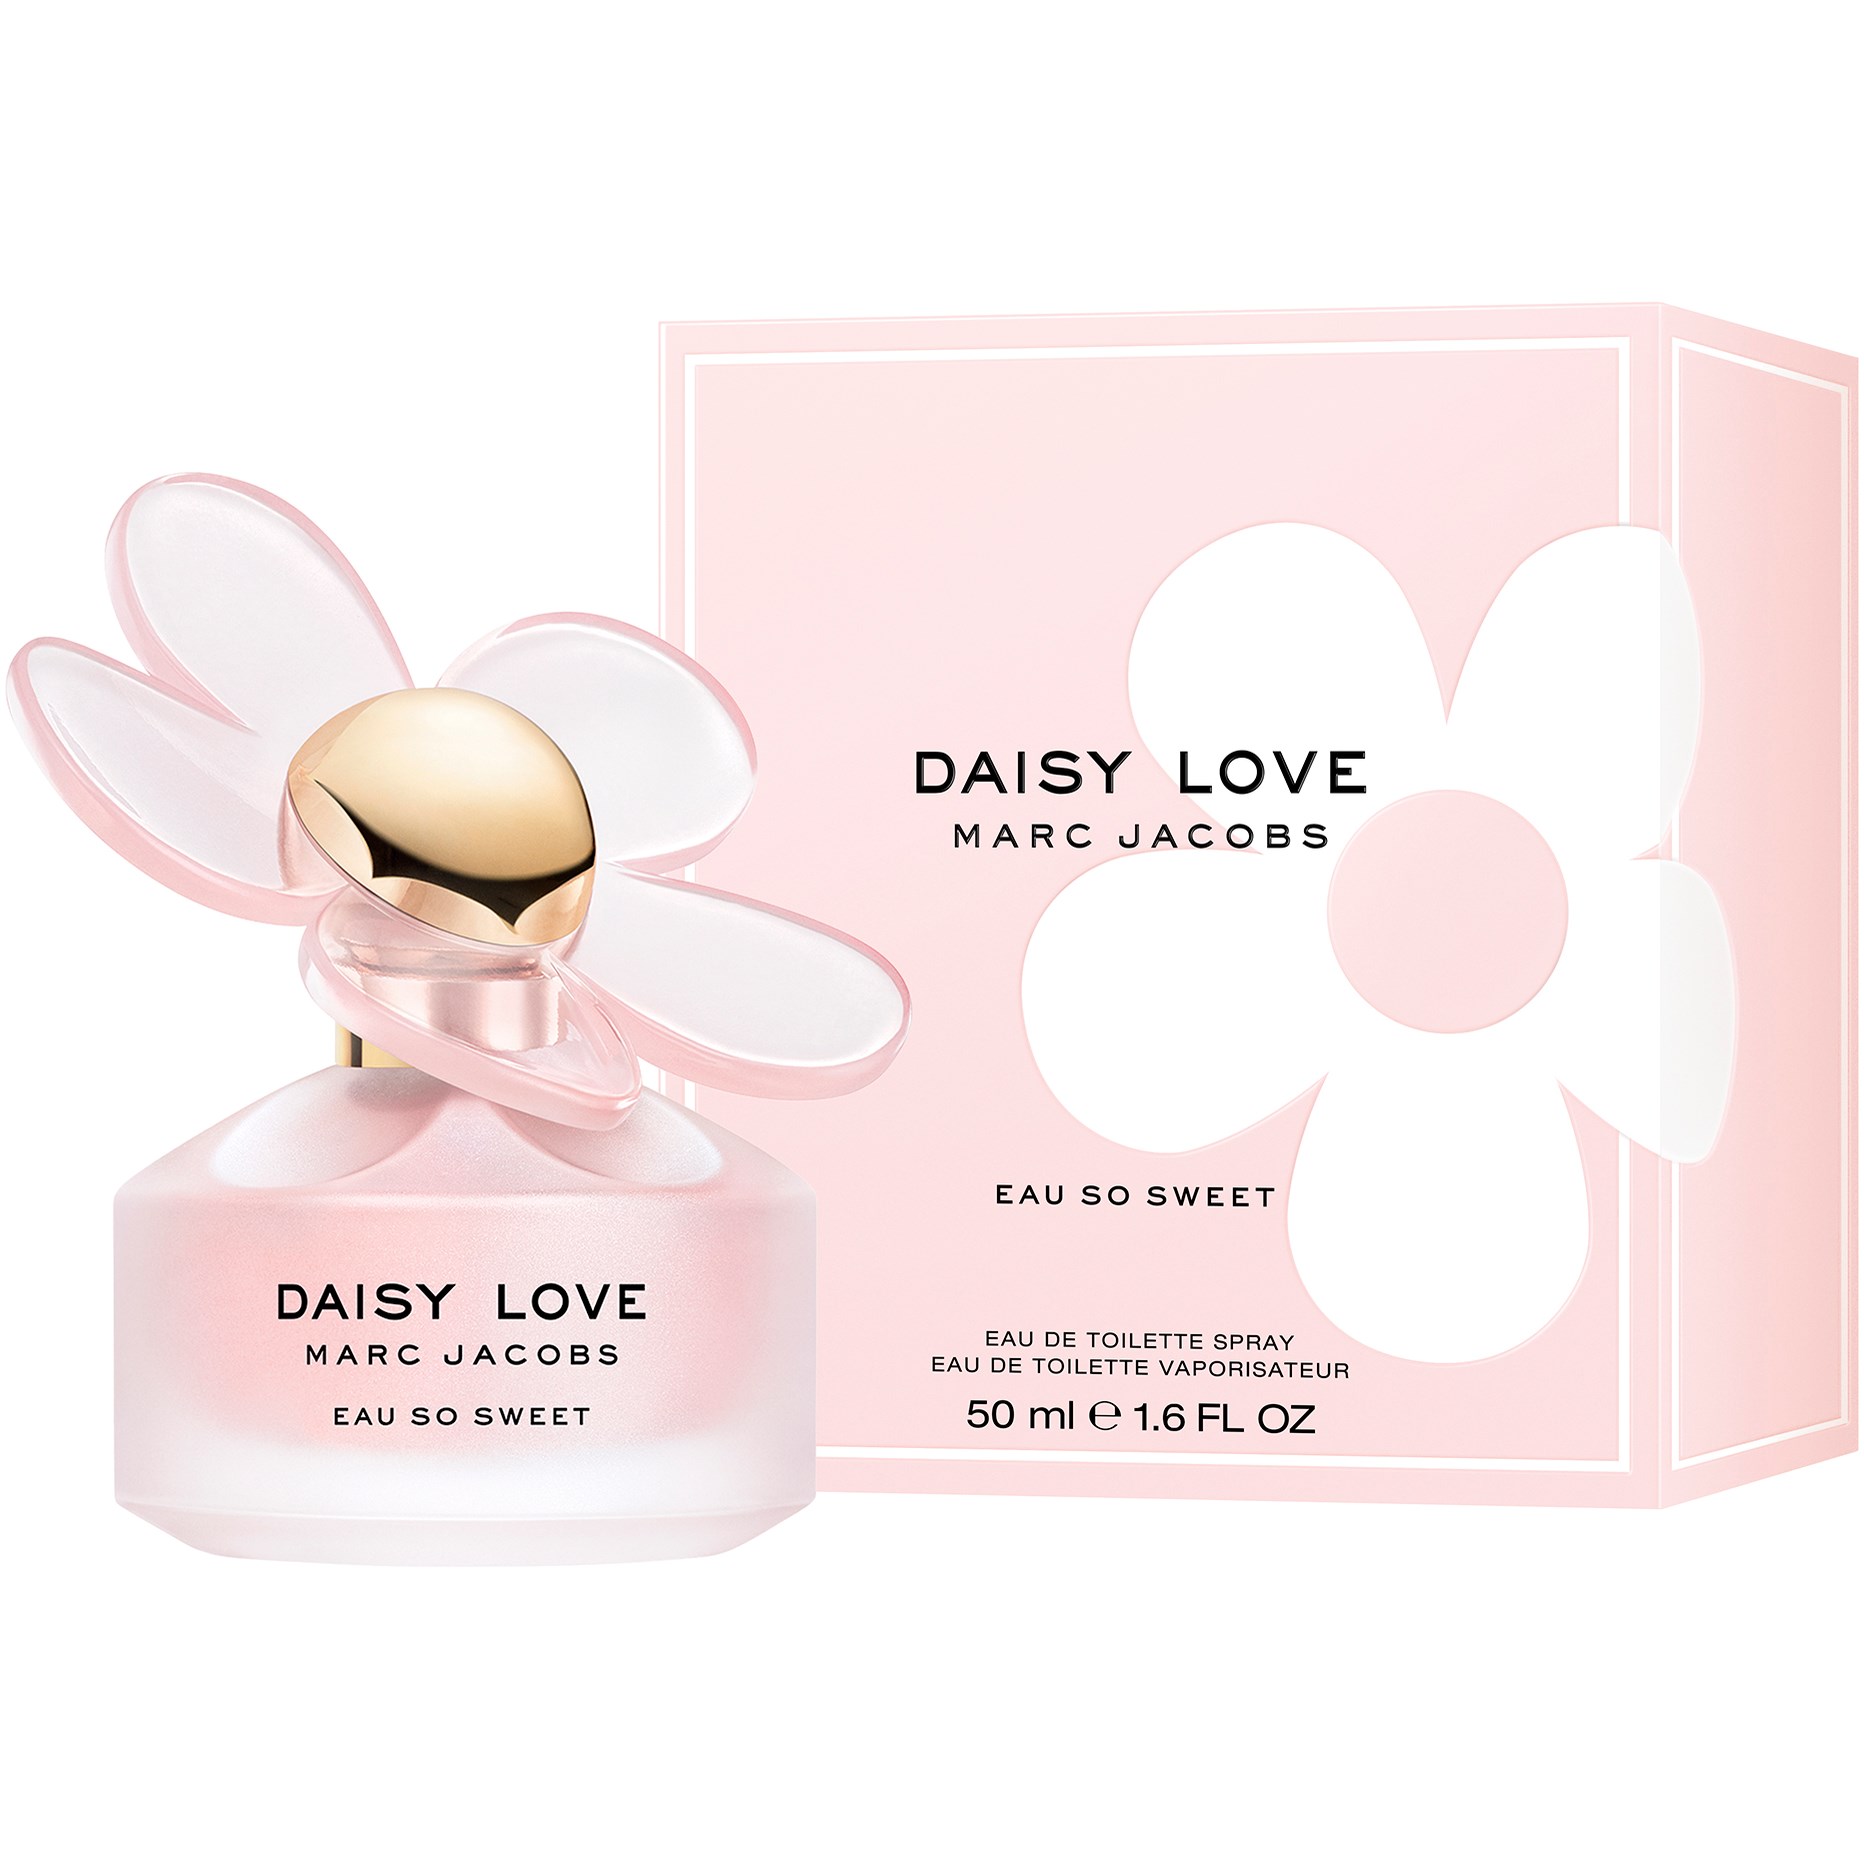 Marc Jacobs Daisy Love Eau So Sweet Petals Eau de Toilette 50 ml